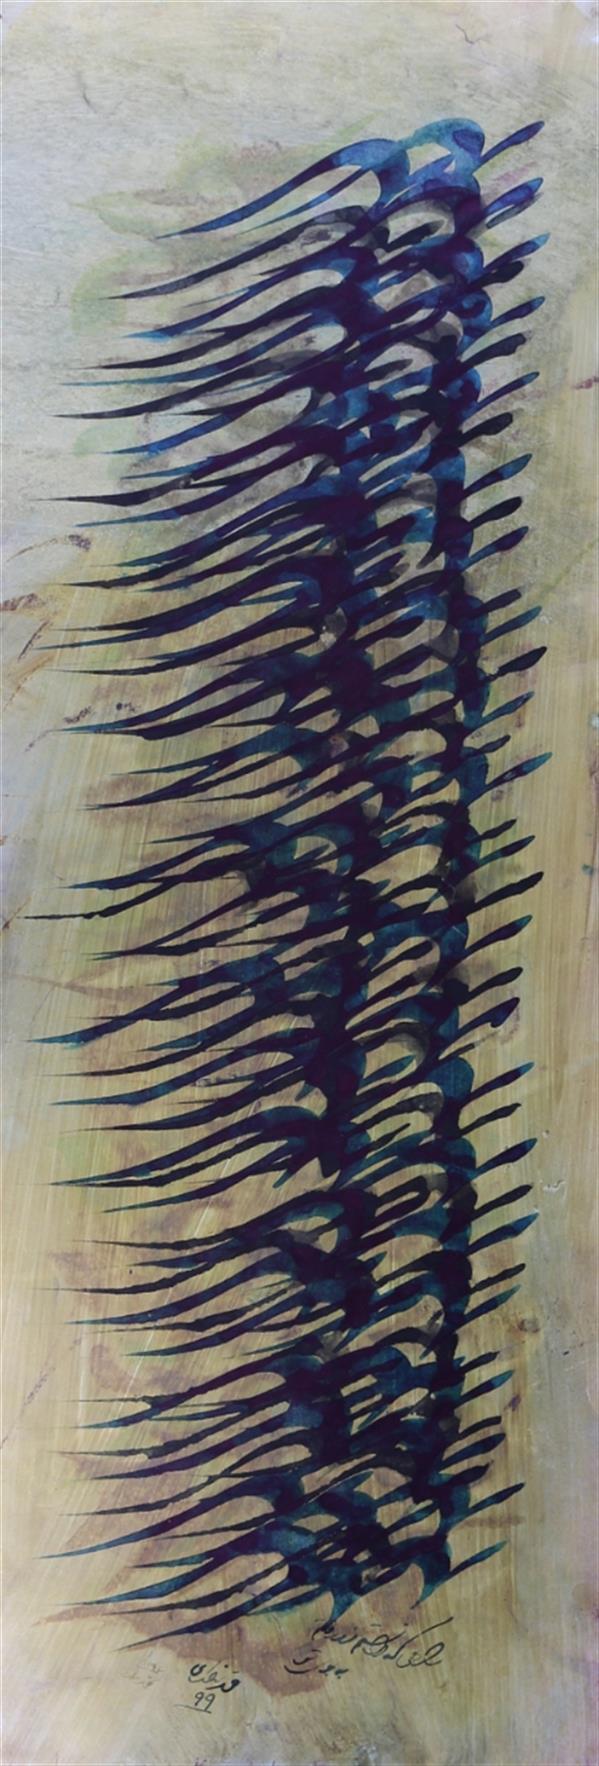 هنر خوشنویسی محفل خوشنویسی محمد مظهری به هر راهی که دانستم فرو رفتم به بوی تو...
مرکب روی مقوا، پرس شده روی پلکسی
قاب چوبی به ابعاد ۵۰×۹۵